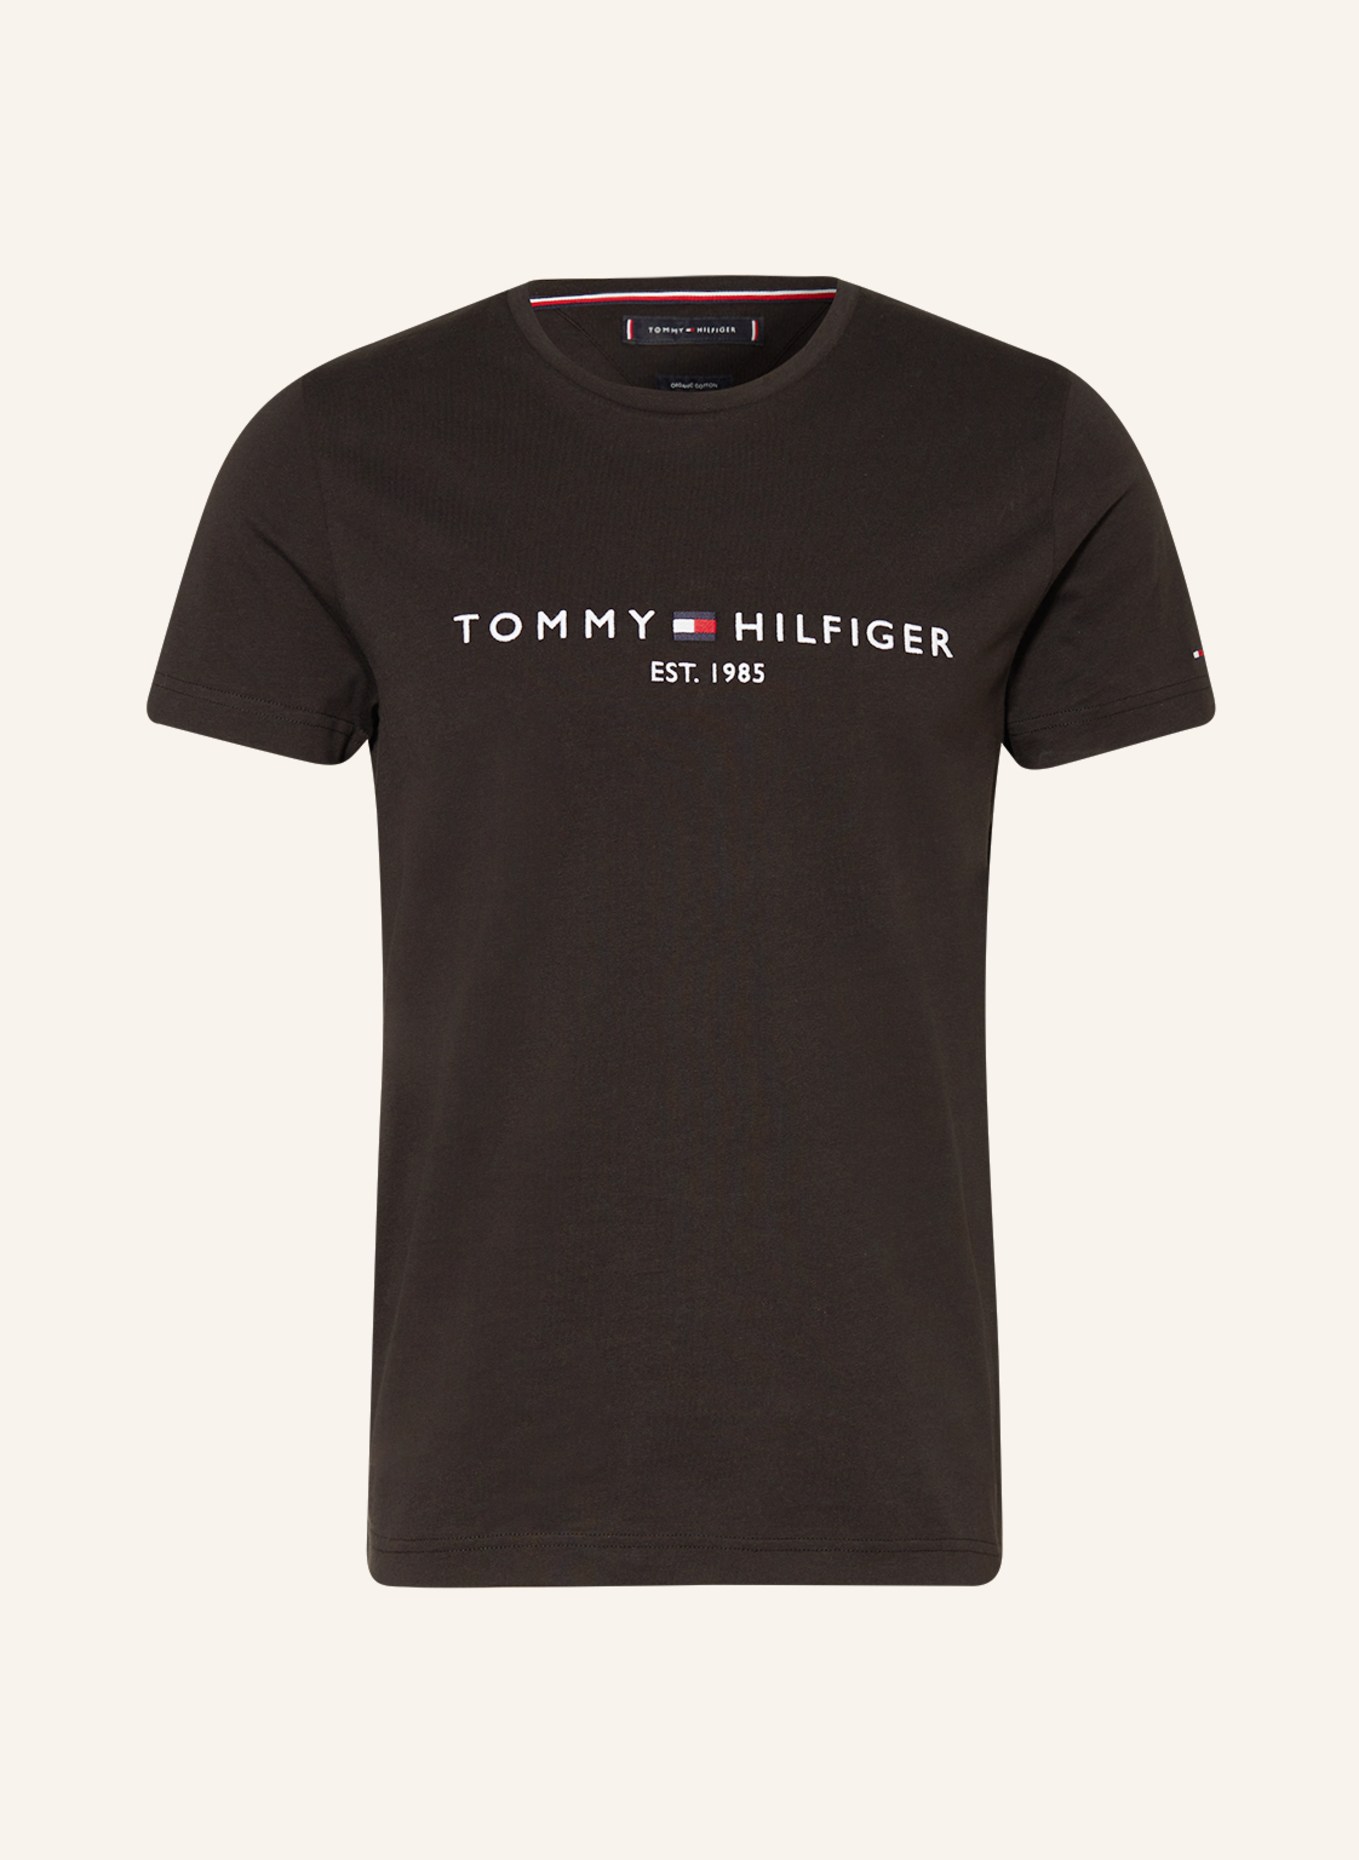 TOMMY HILFIGER T-Shirt, Farbe: SCHWARZ (Bild 1)